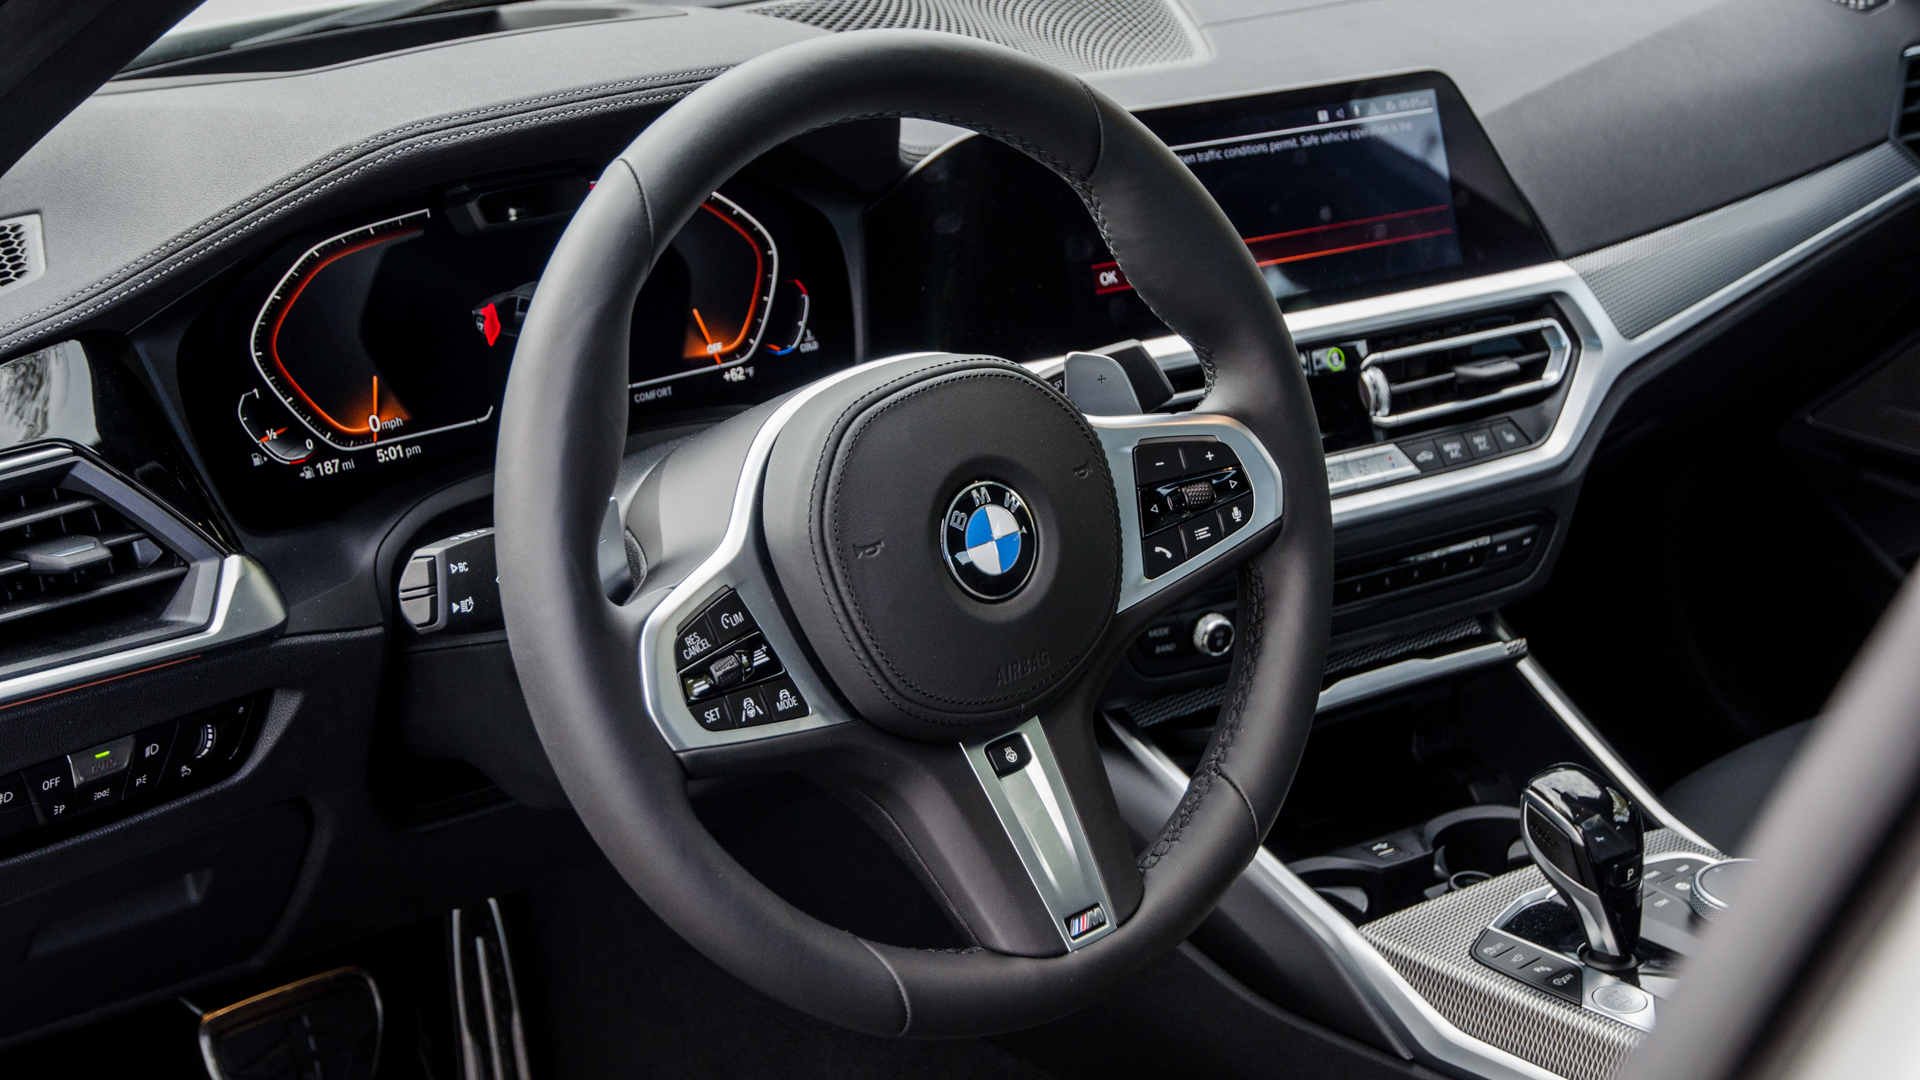 Hình ảnh BMW 330i đẹp lung linh chất lượng cao 10